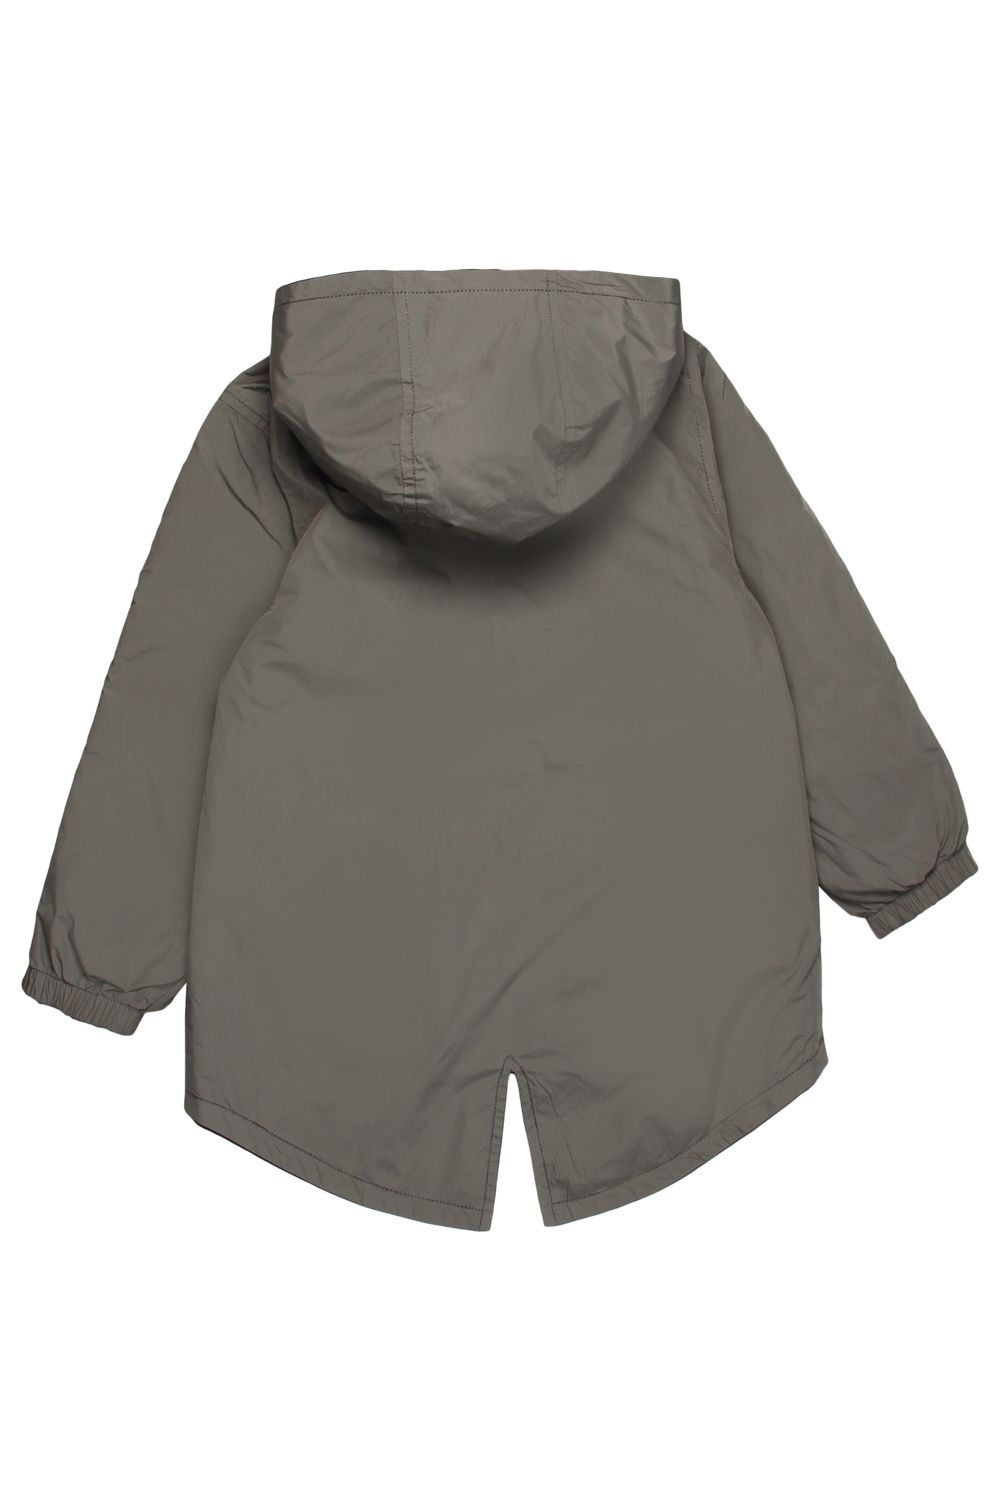 Куртка Noble People, размер 98, цвет серый 18607-486 - фото 8